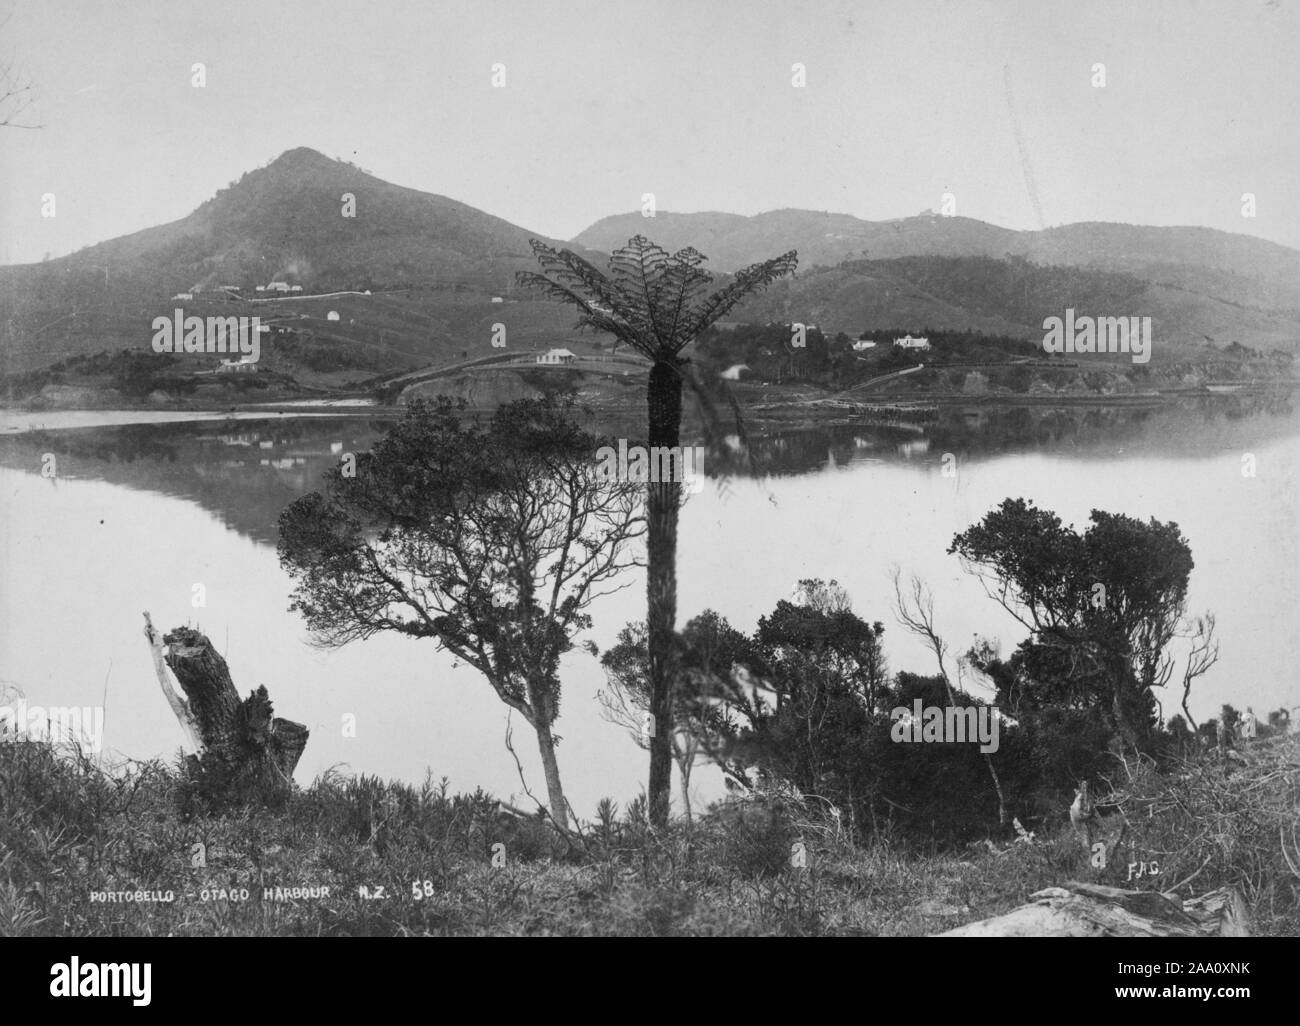 Photographie noir et blanc photographie de paysage village de Portobello Otago Harbour, île du Sud, Nouvelle-Zélande, par le photographe Frank Coxhead, 1885. À partir de la Bibliothèque publique de New York. () Banque D'Images